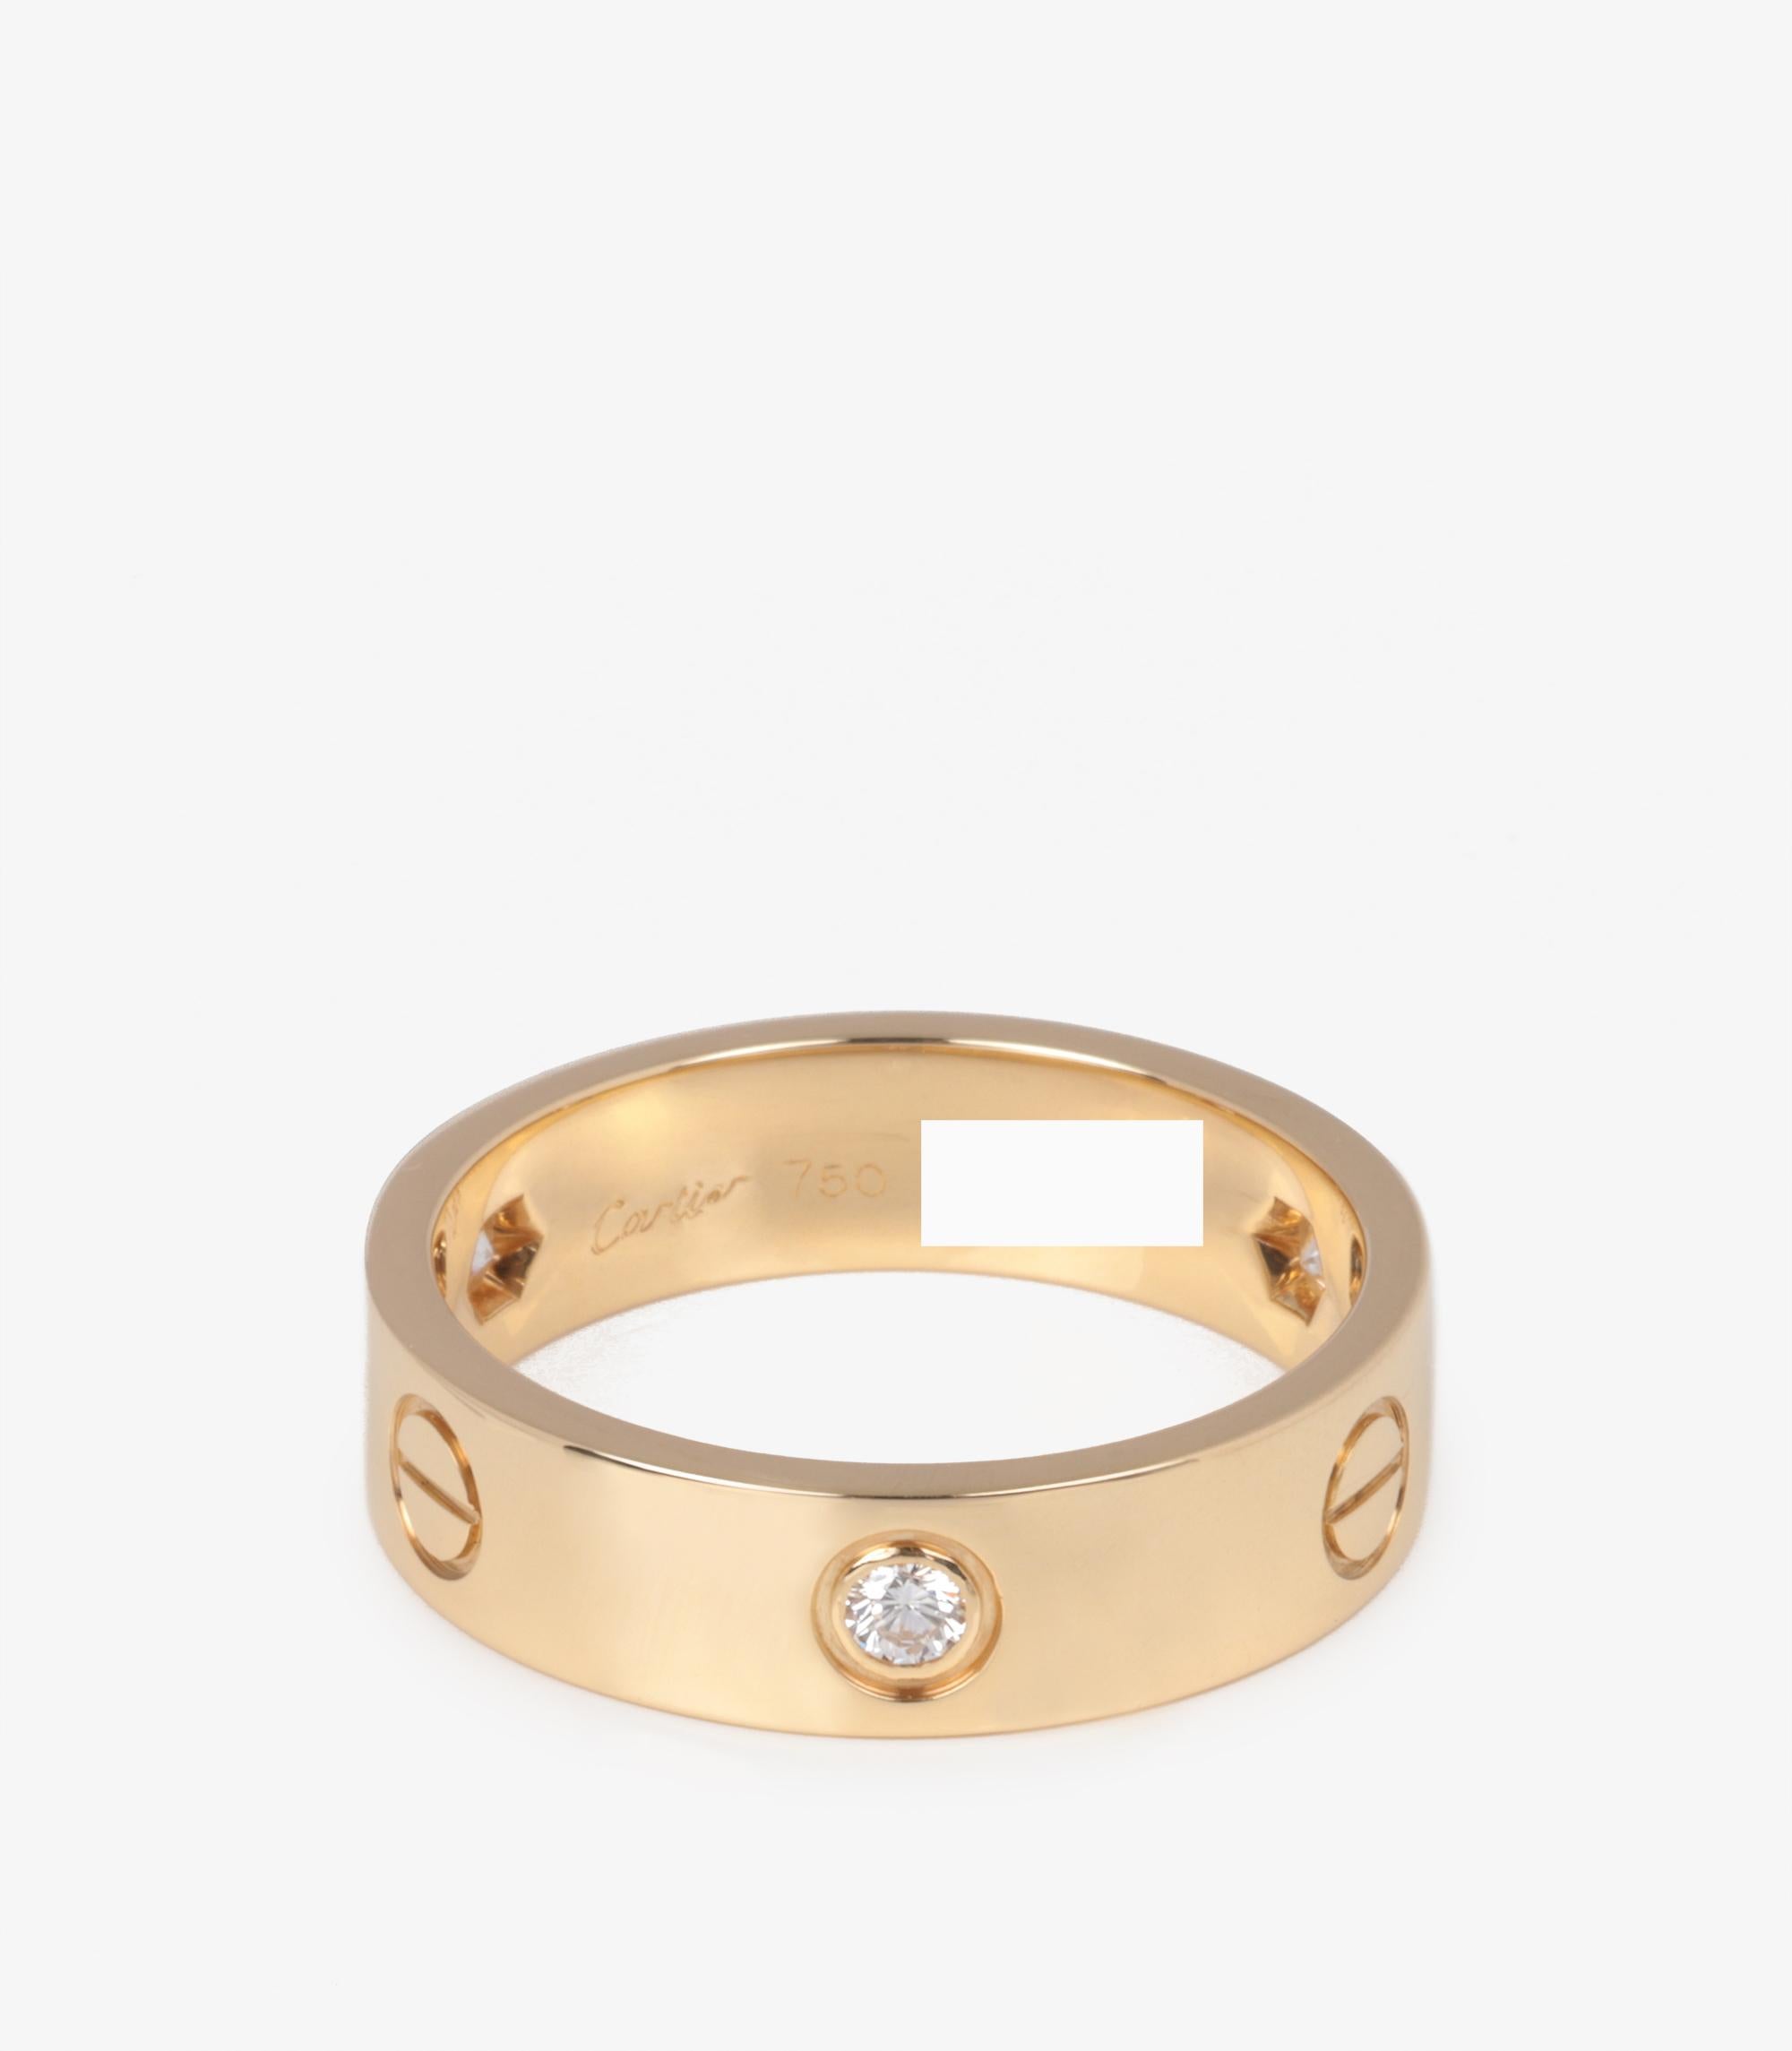 Cartier: 18 Karat Gelbgold Love-Ring mit 3 Diamanten

Marke- Cartier
Modell- 3 Diamanten Love Band Ring
Produkttyp- Ring
Seriennummer- HL******
Alter- Circa 2006
Begleitet von- Cartier Box, Zertifikat, Quittung
MATERIAL(e)- 18ct